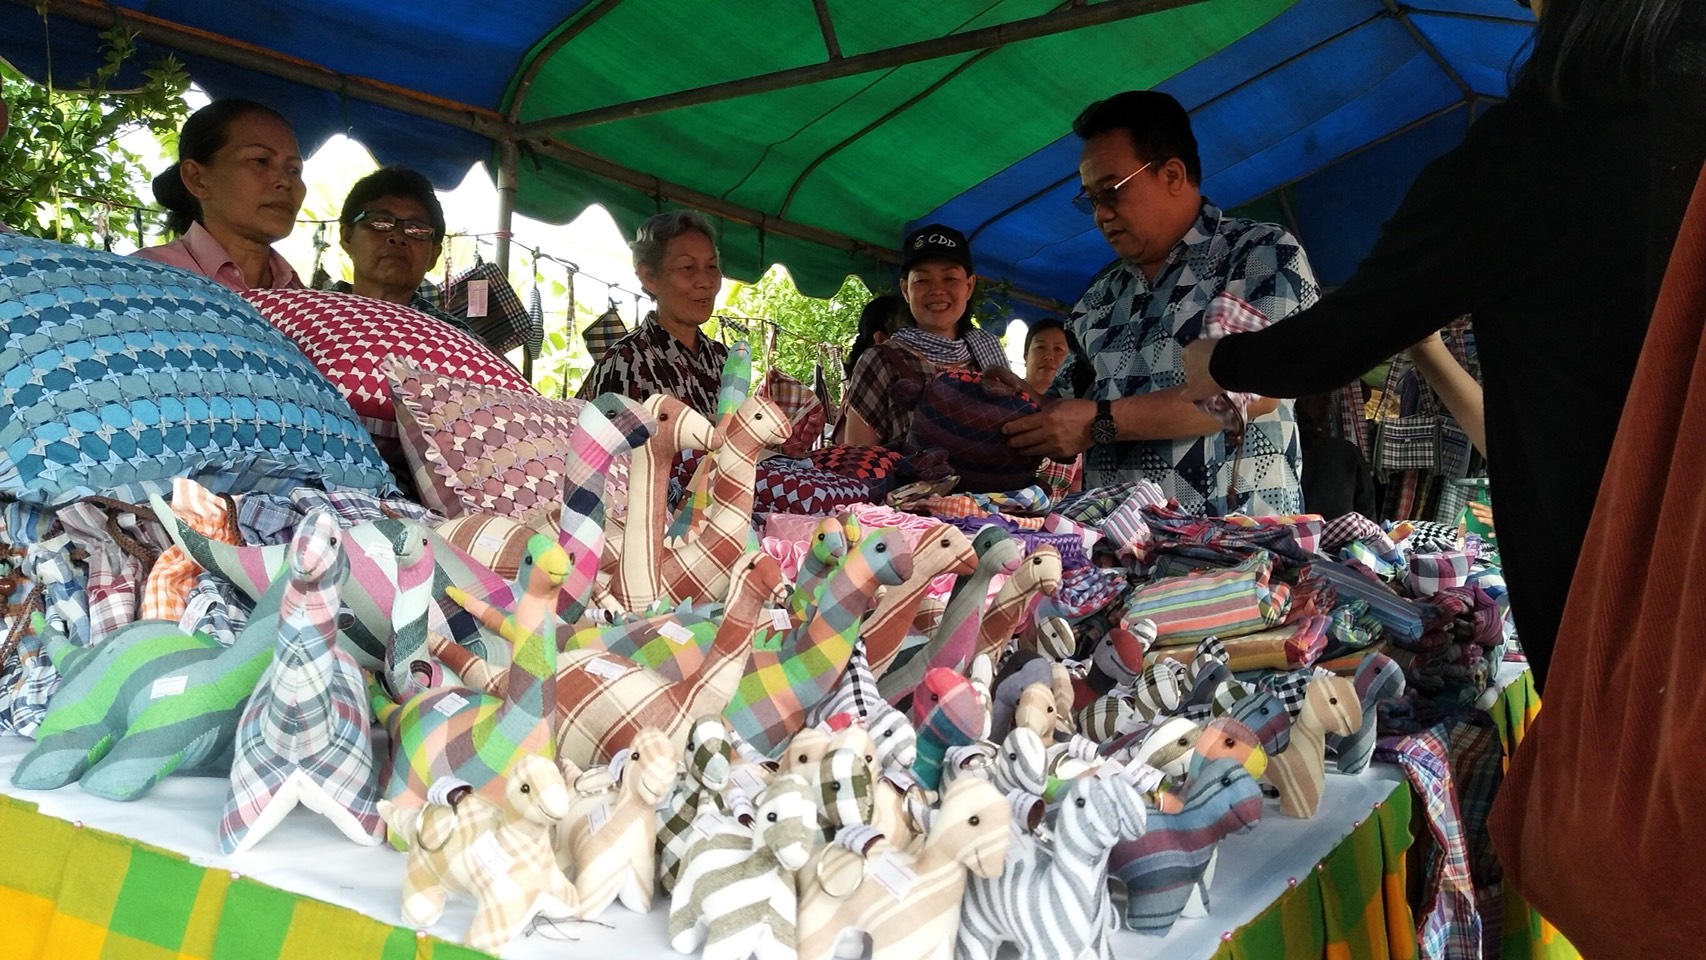 ฝีมือ ตัดเย็บผ้า ของชุมชนชาวบ้านดง